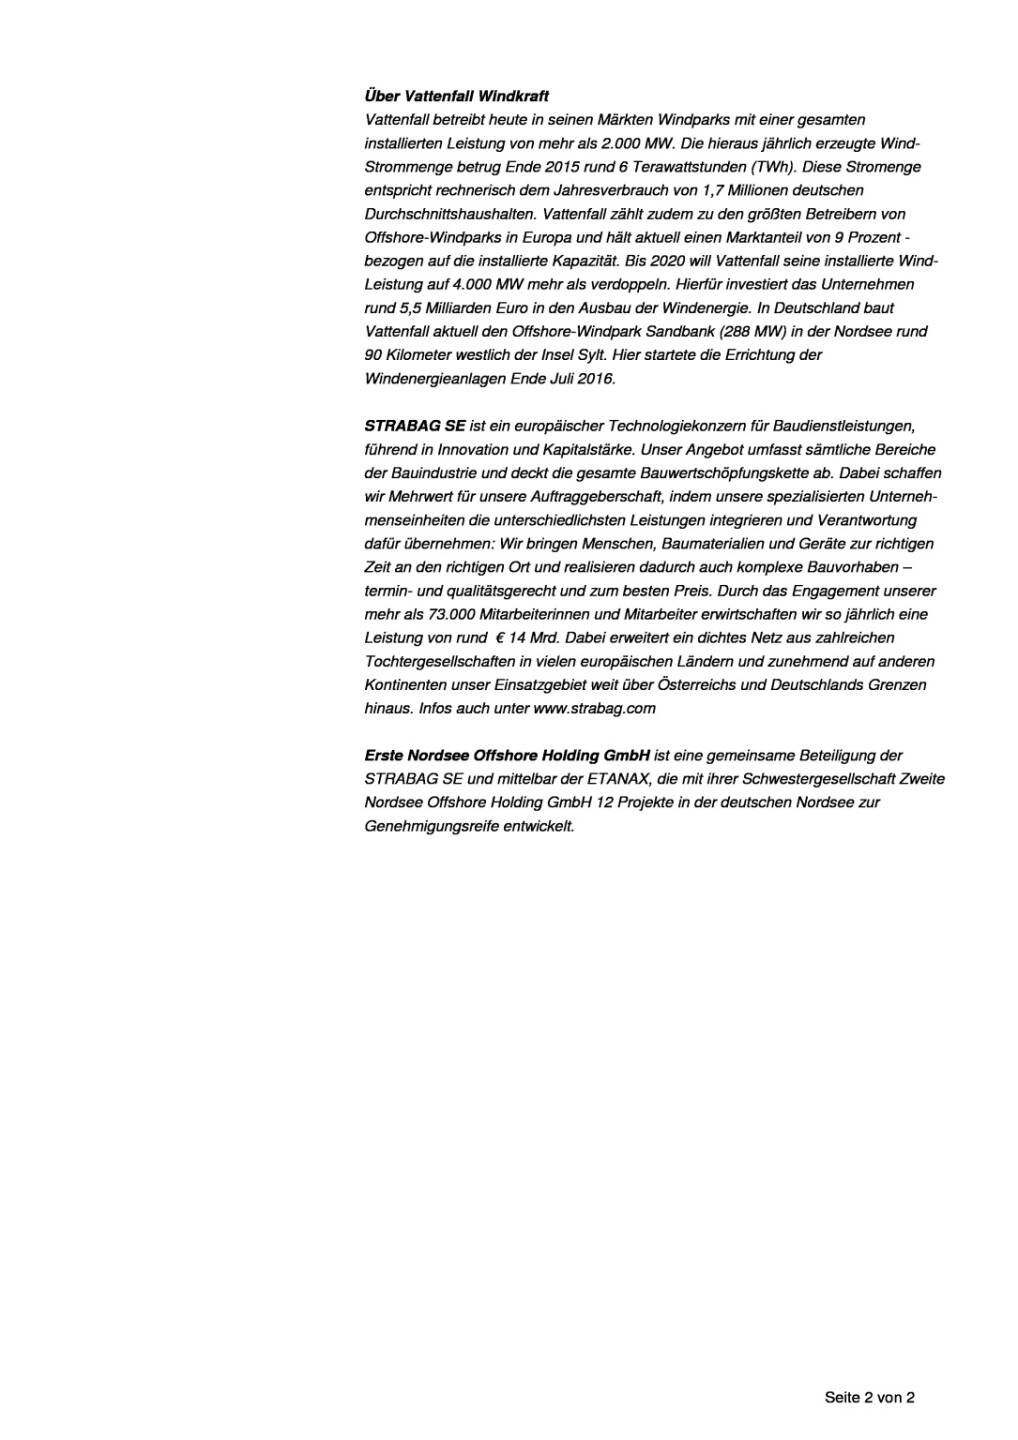 Strabag: Vattenfall/Global Tech II, Seite 2/2, komplettes Dokument unter http://boerse-social.com/static/uploads/file_1604_strabag_vattenfallglobal_tech_ii.pdf